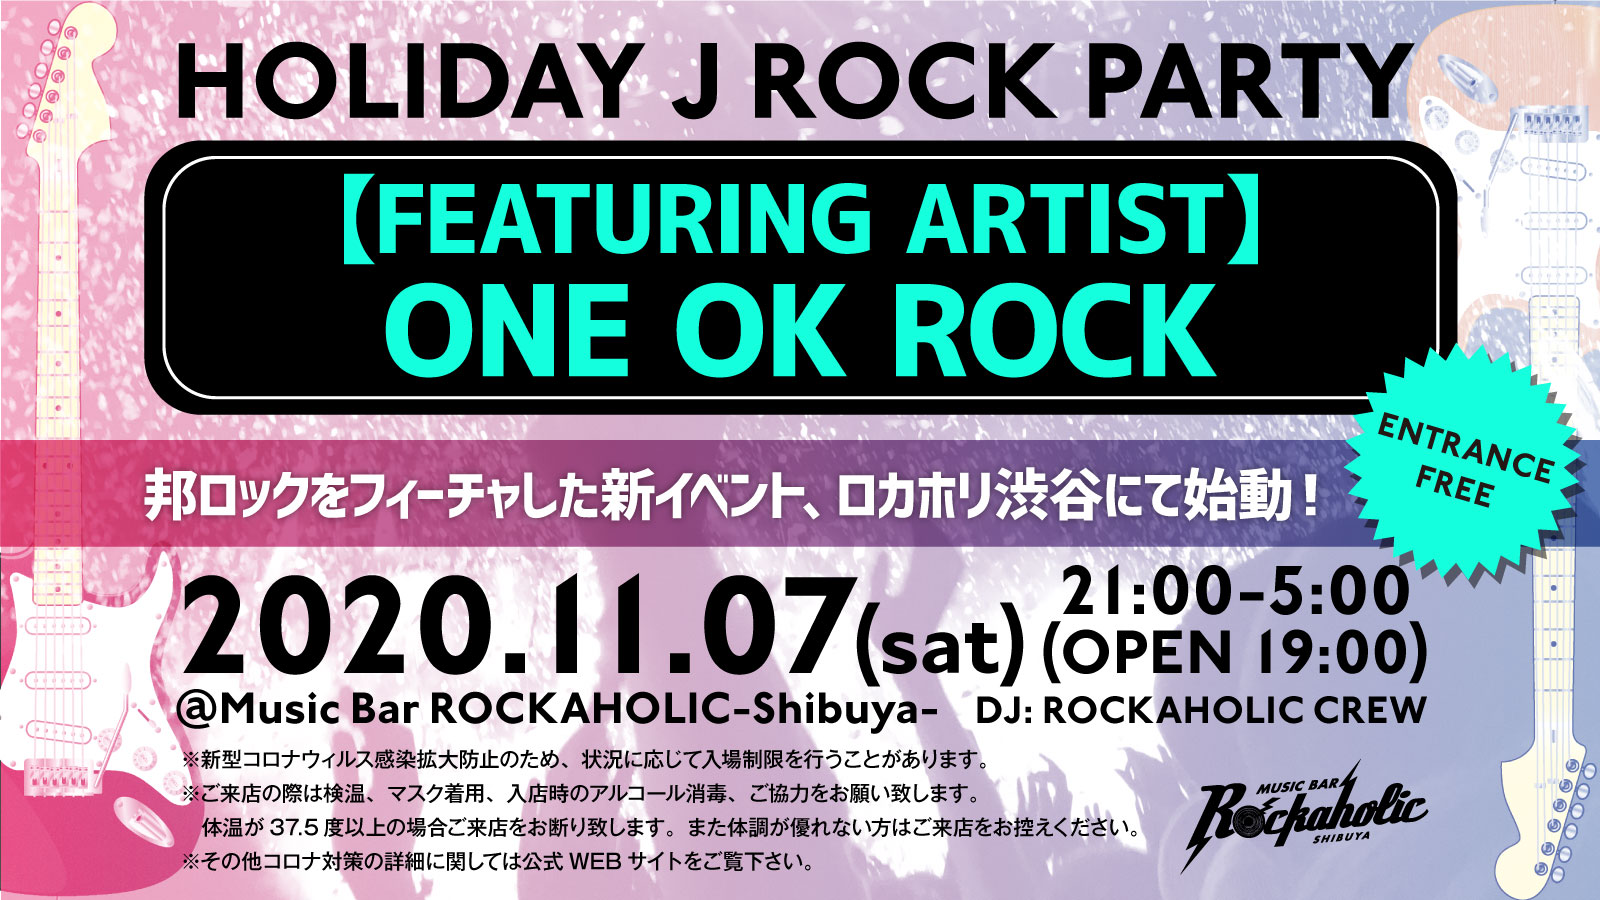 https://bar-rockaholic.jp/shibuya/blog/ElAkR6KWkAYODvR.jpg